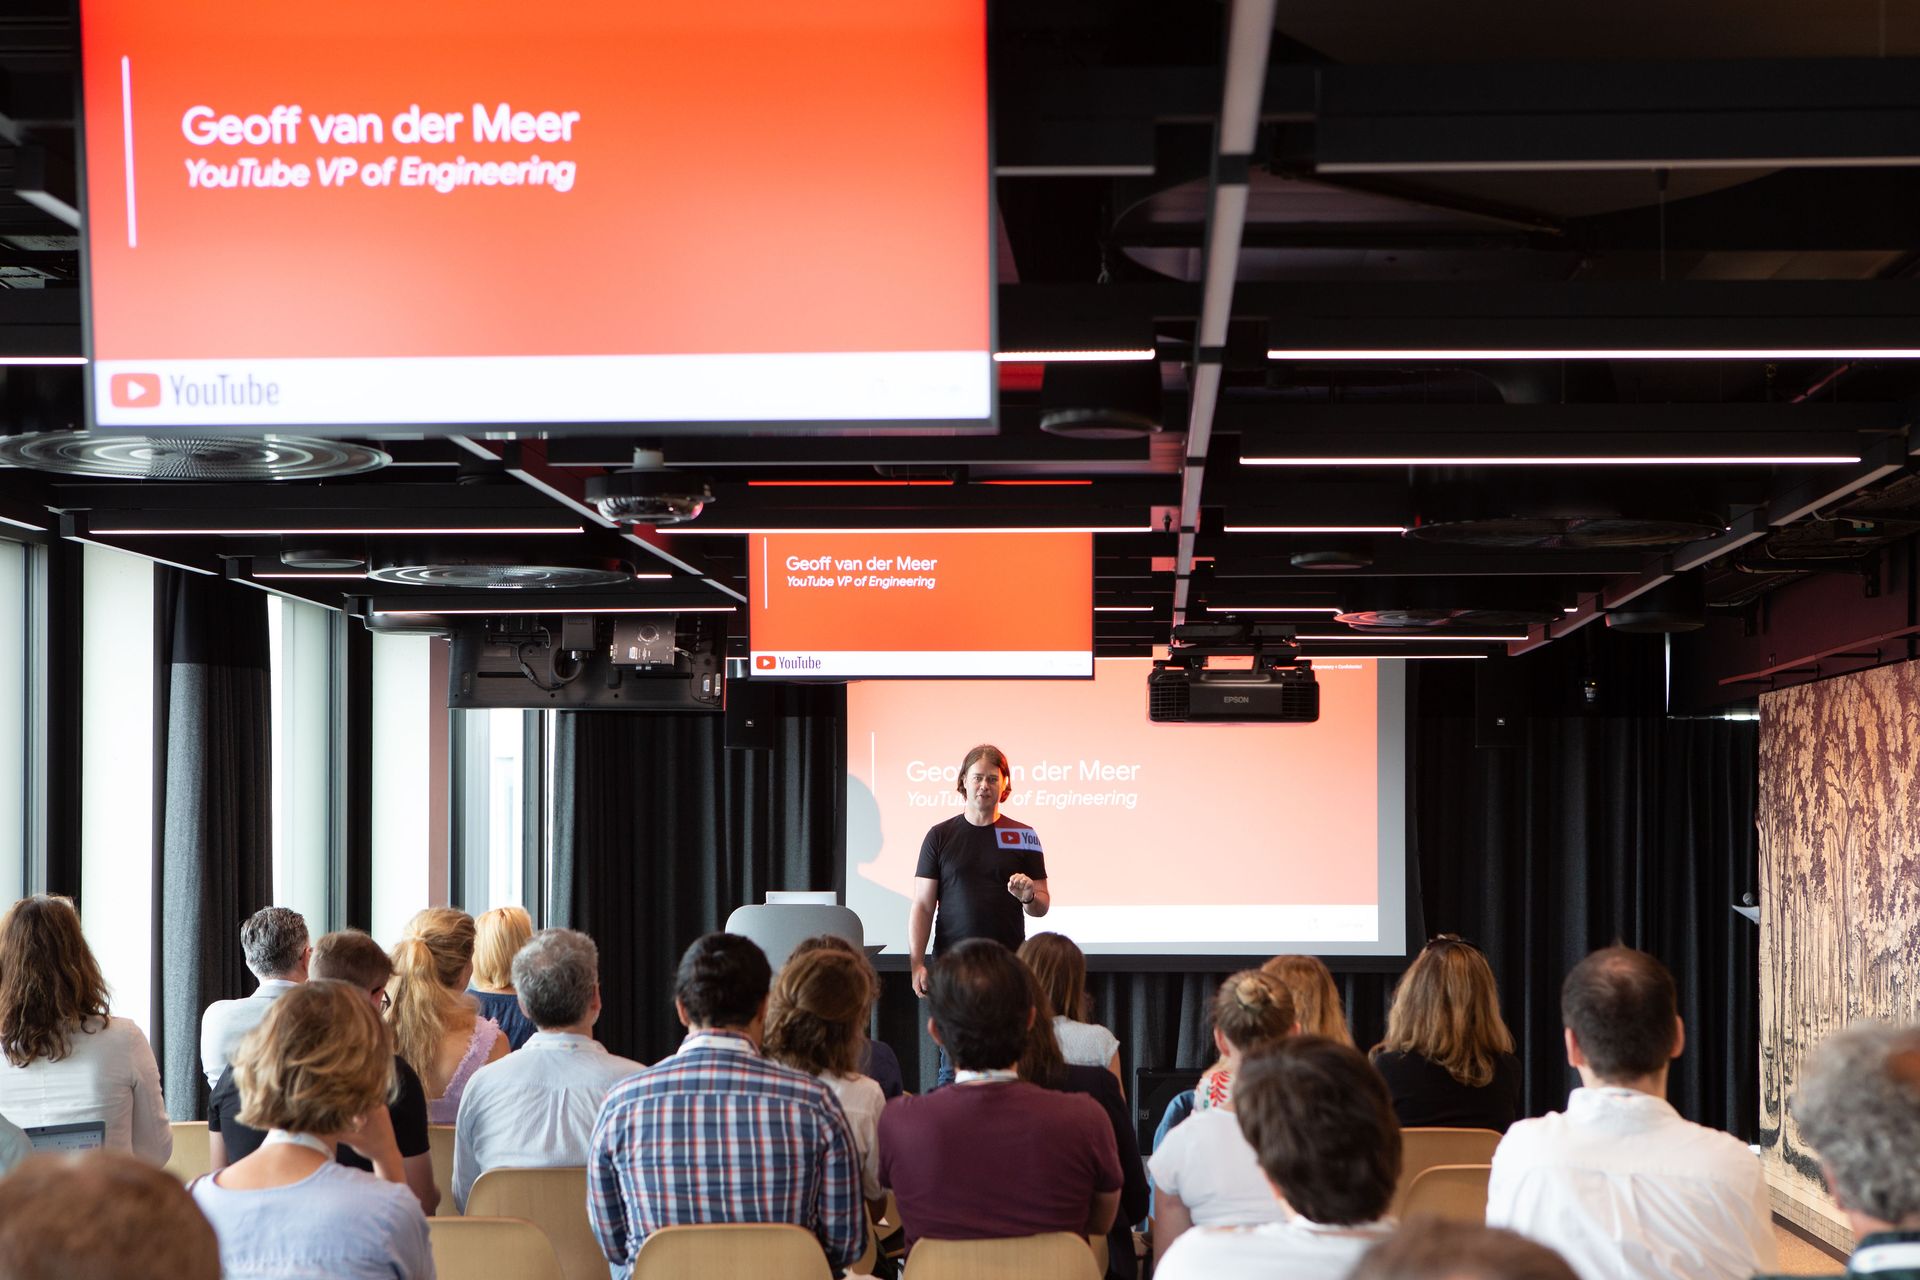 Geoff Van der Meer, vicepresidente dell'engineering di YouTube, ha presenziato il 27 giugno 2022 all’inaugurazione ufficiale del nuovo Campus Europaallee di Google a Zurigo